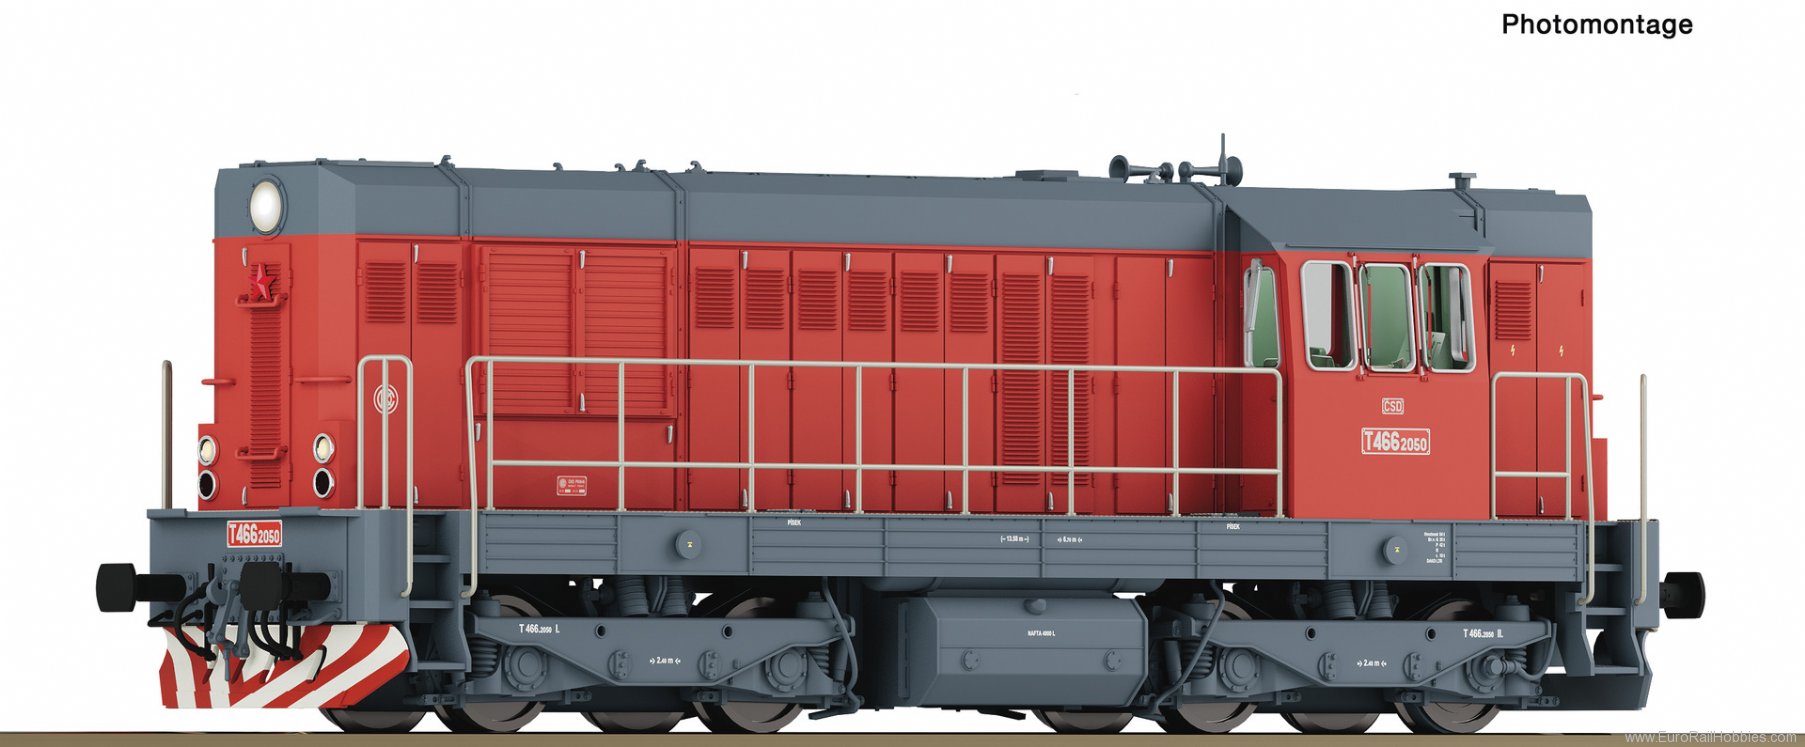 Roco 7310003 Diesel locomotive T 466 2050, CSD (Digital So